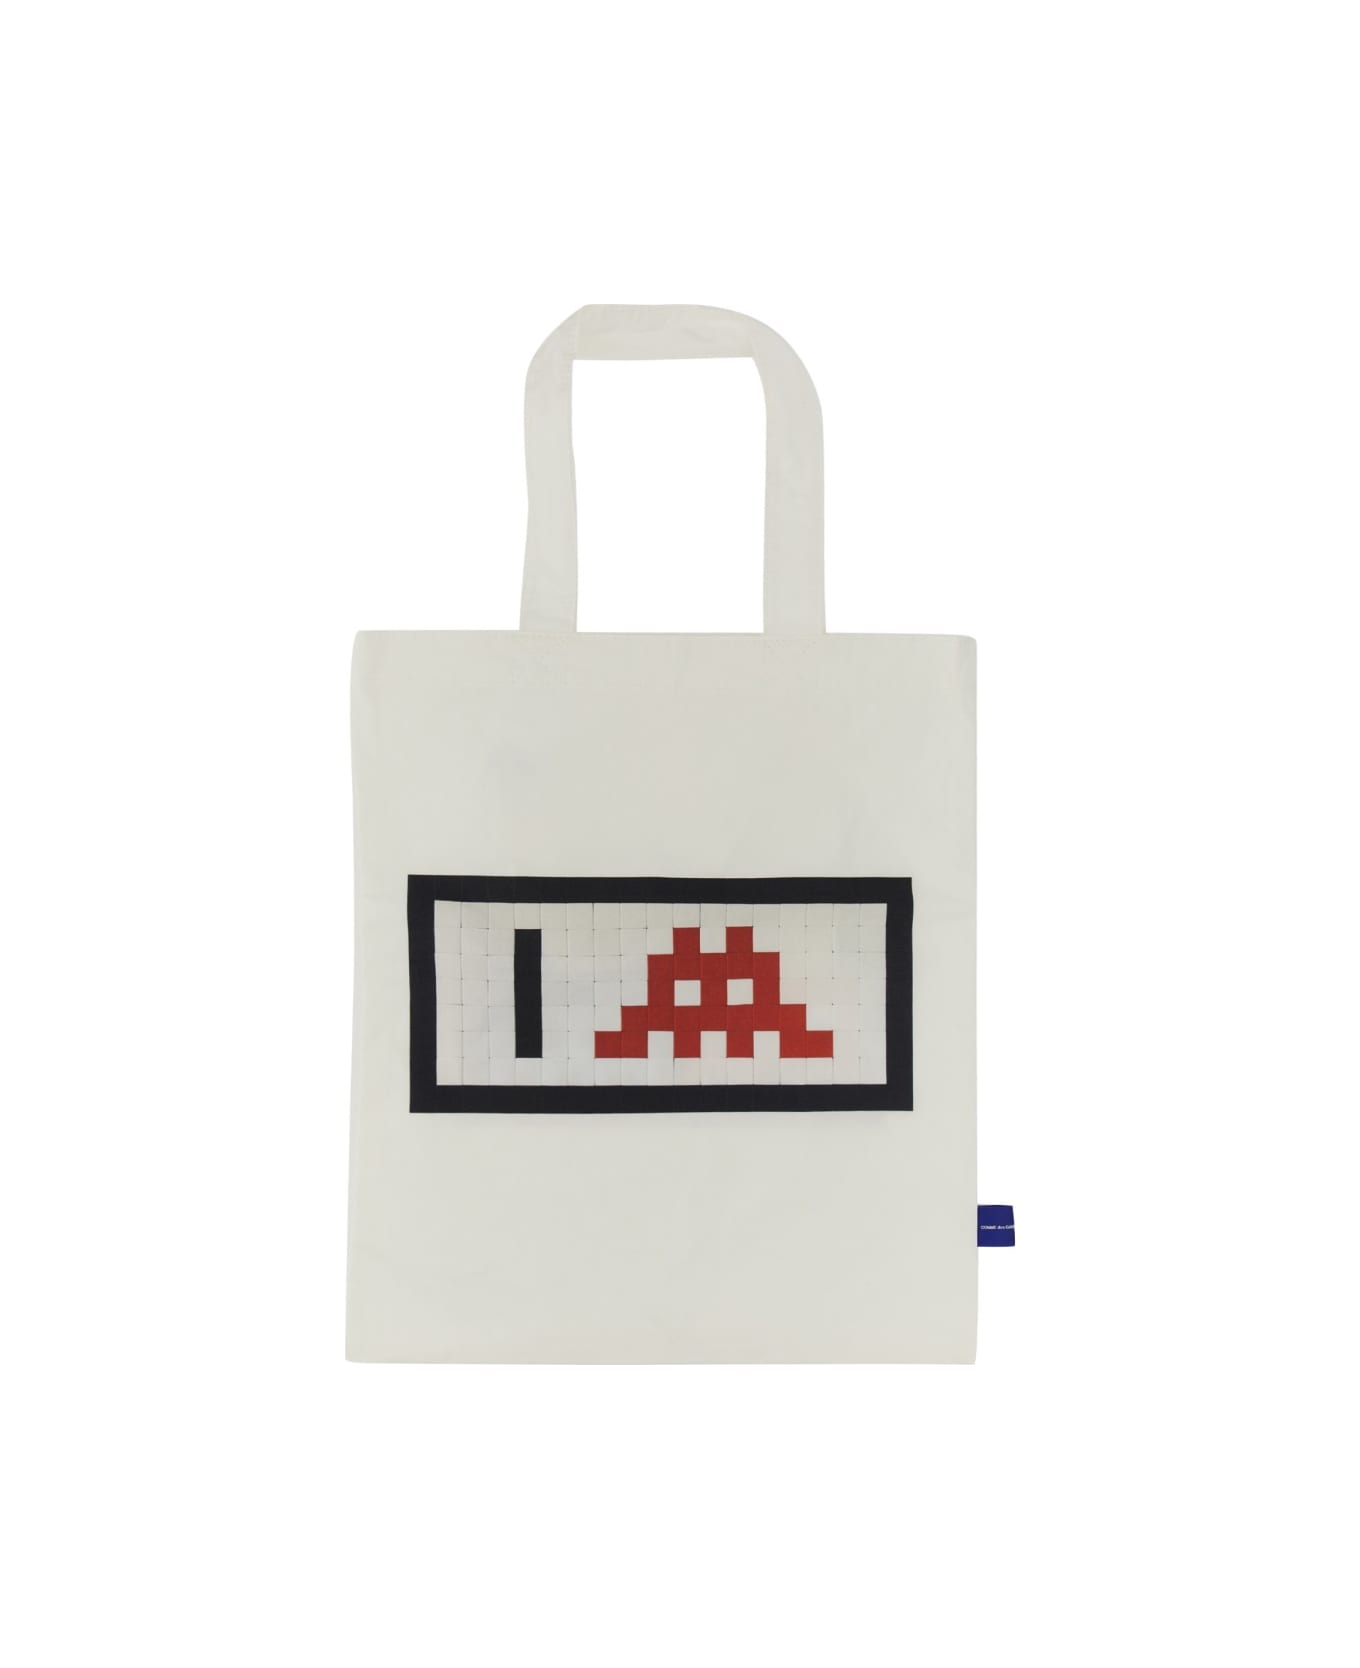 Comme des Garçons Shirt "pixel" Shopping Bag - WHITE トートバッグ